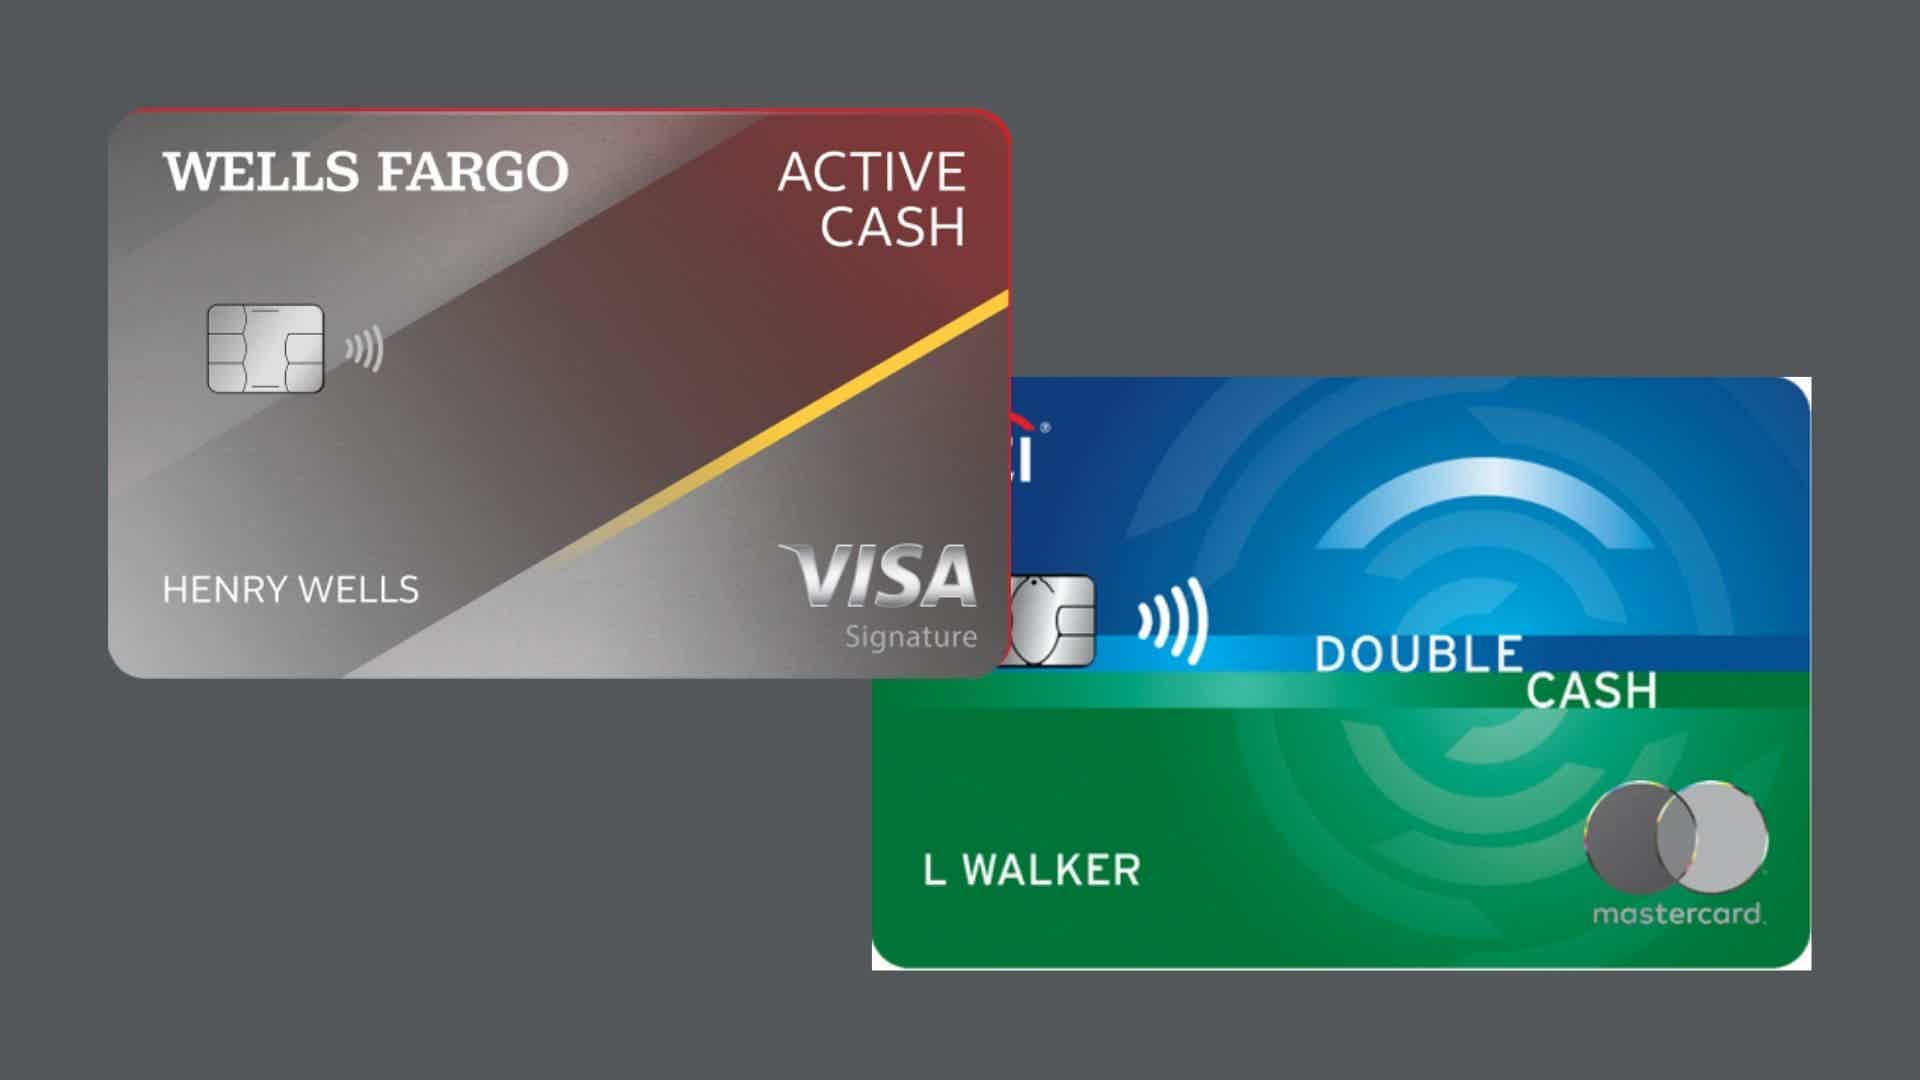 Compração entre cartão Citi Card Double Cash ou cartão Wells Fargo Active Cash. Fonte: Wells Fargo.